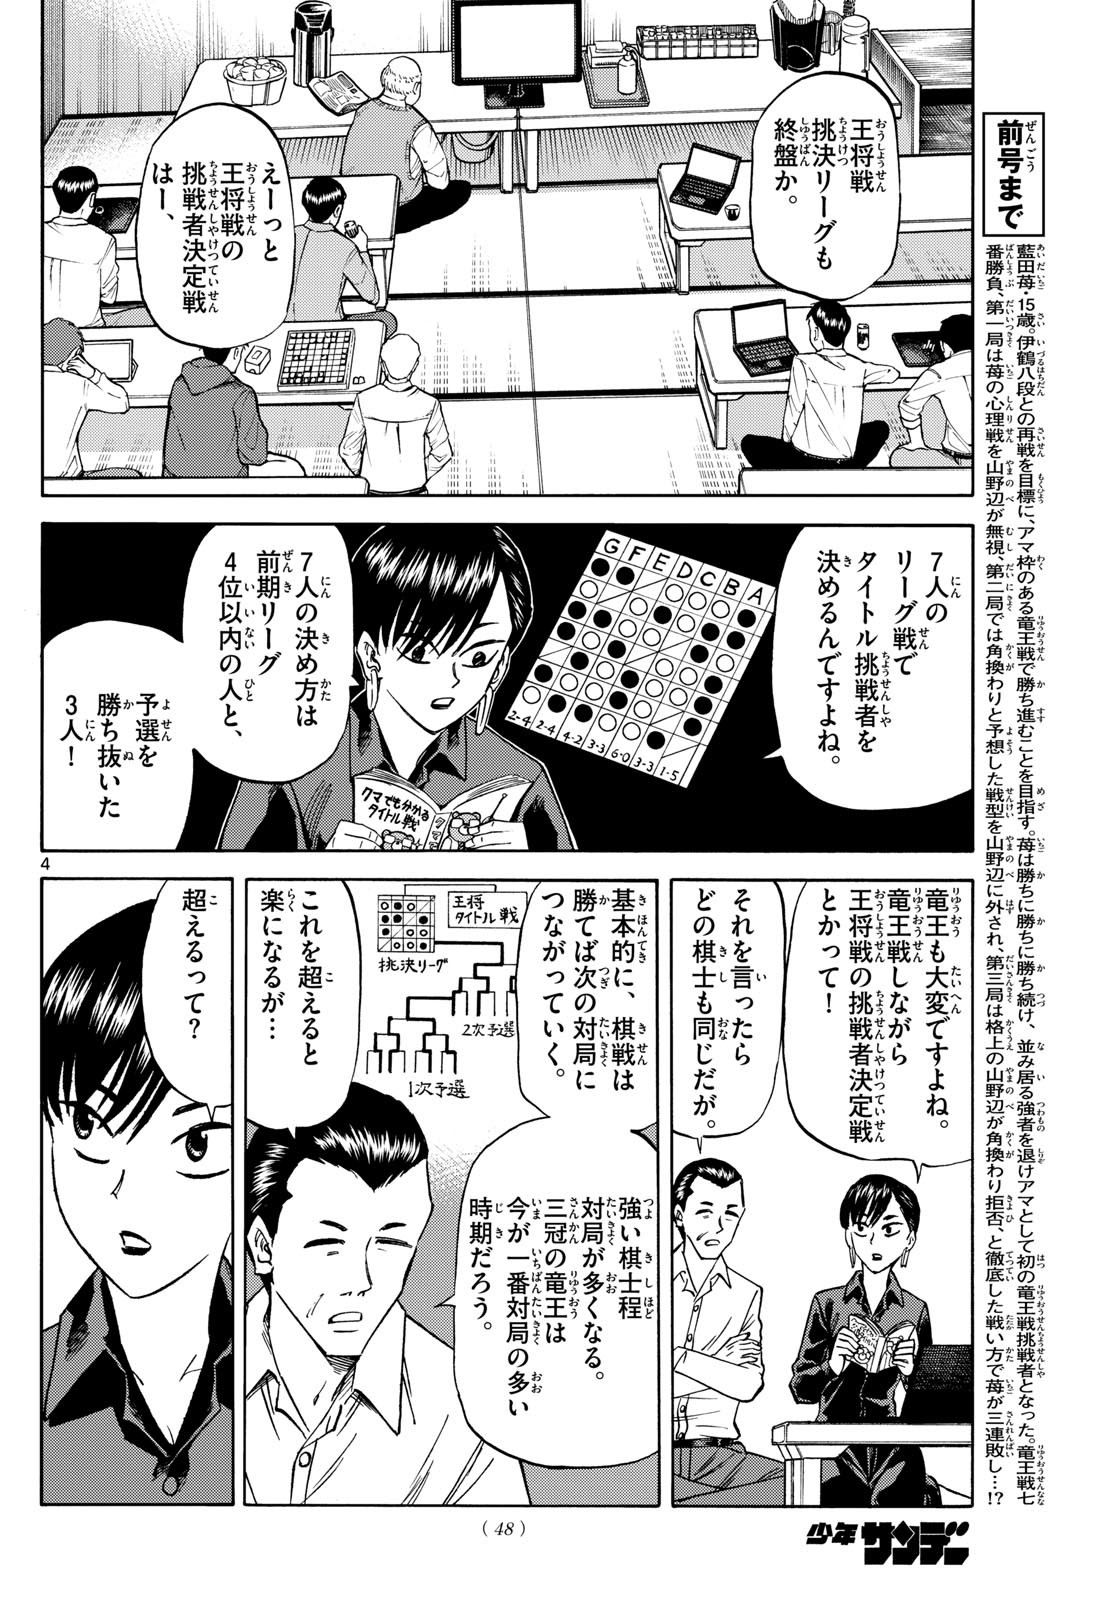 Ryu-to-Ichigo - Chapter 161 - Page 4